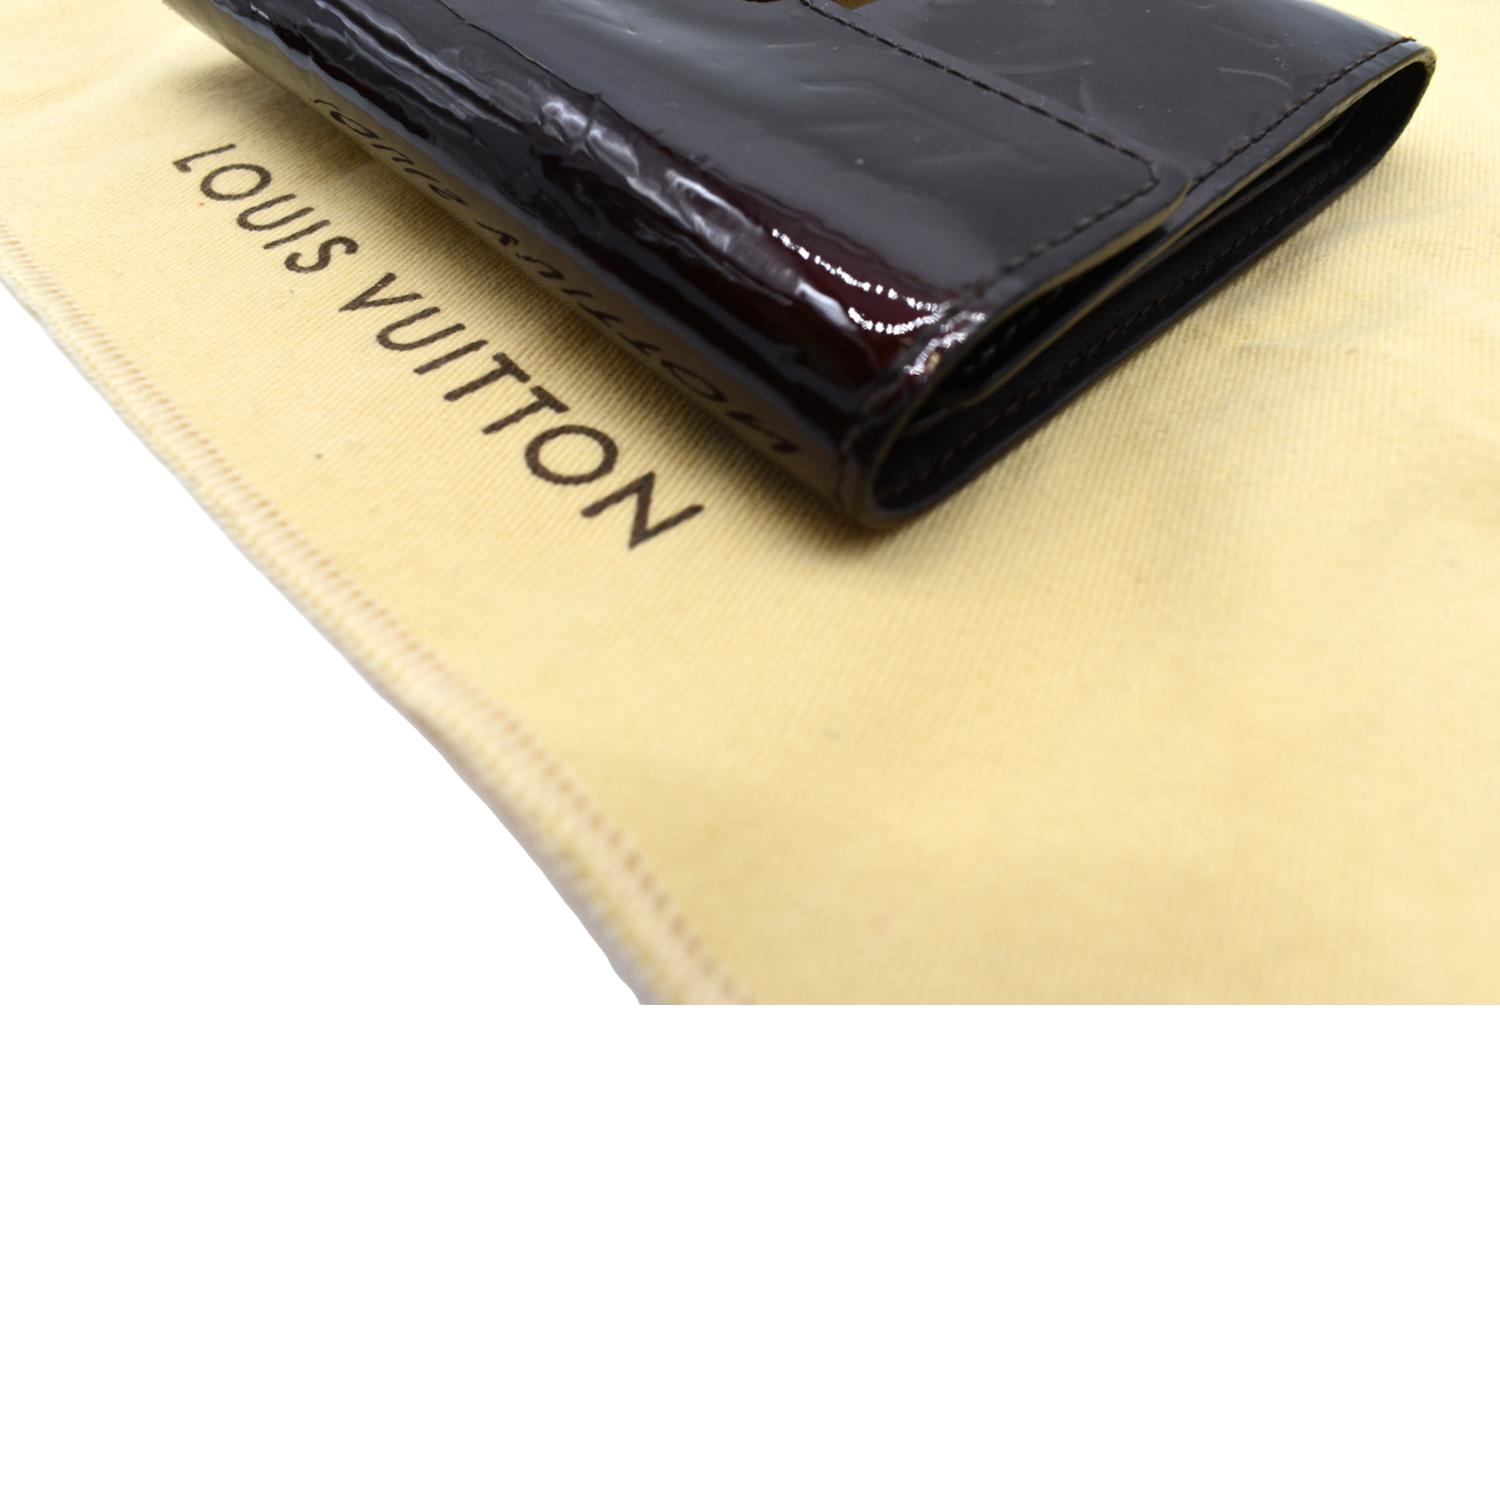 Louis Vuitton Monogram Vernis Patent Embossed Leather Amarante